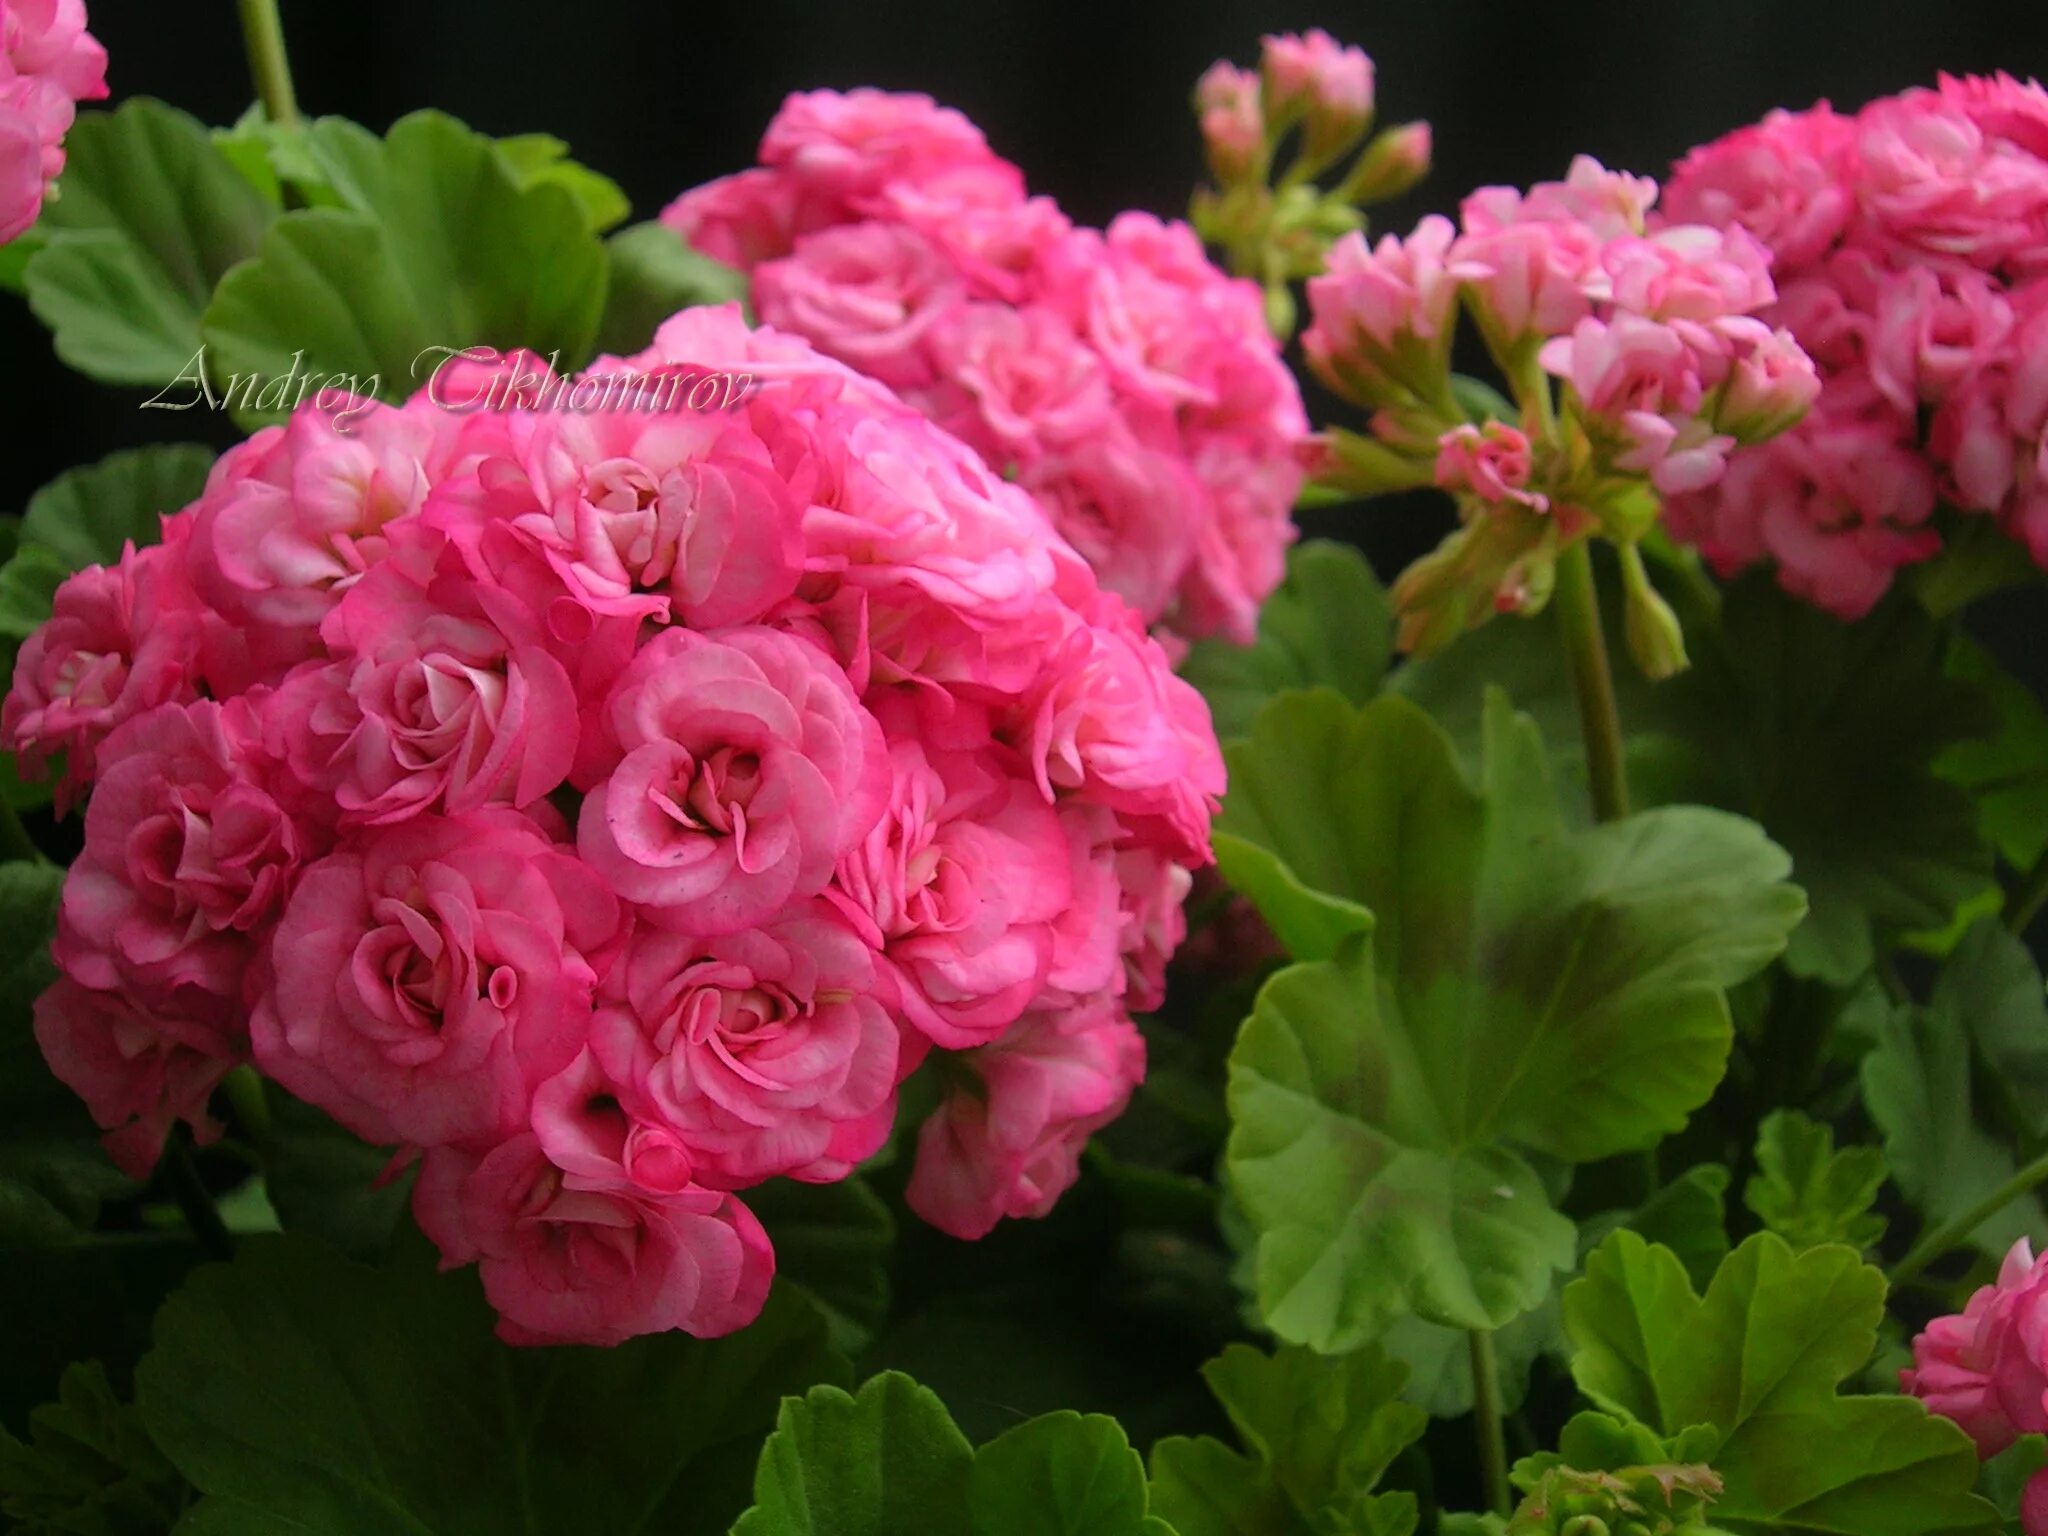 Пеларгония антик Роуз. Герань Grainger's Antique Rose. Miss Rose пеларгония.